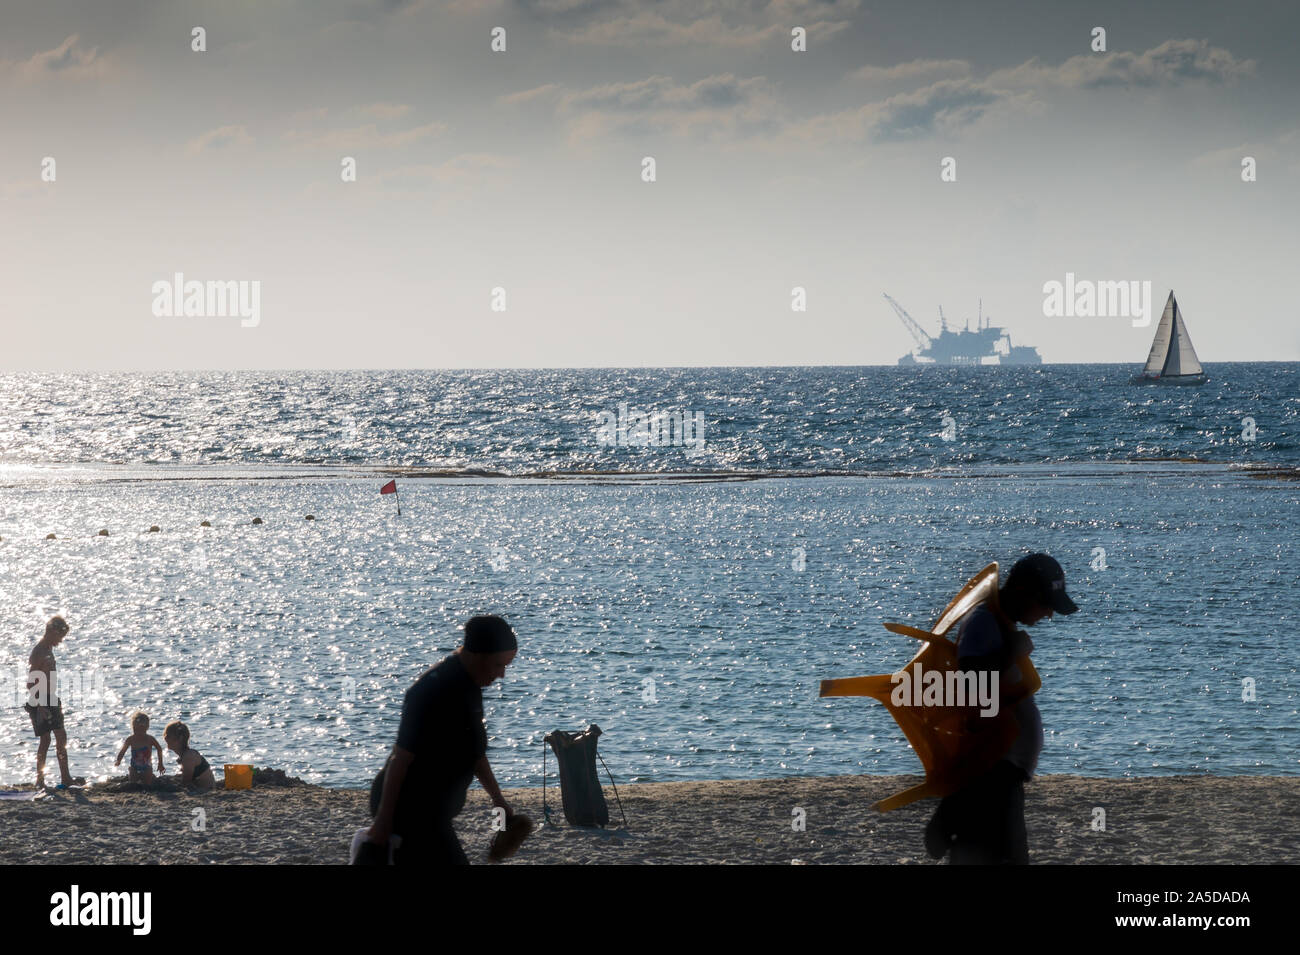 DOR STRAND, Israel/18 OKT 2019: Badegäste am Strand als Segelboot an der Vorderseite der ökologisch umstrittene offshore Bohrinsel Stockfoto